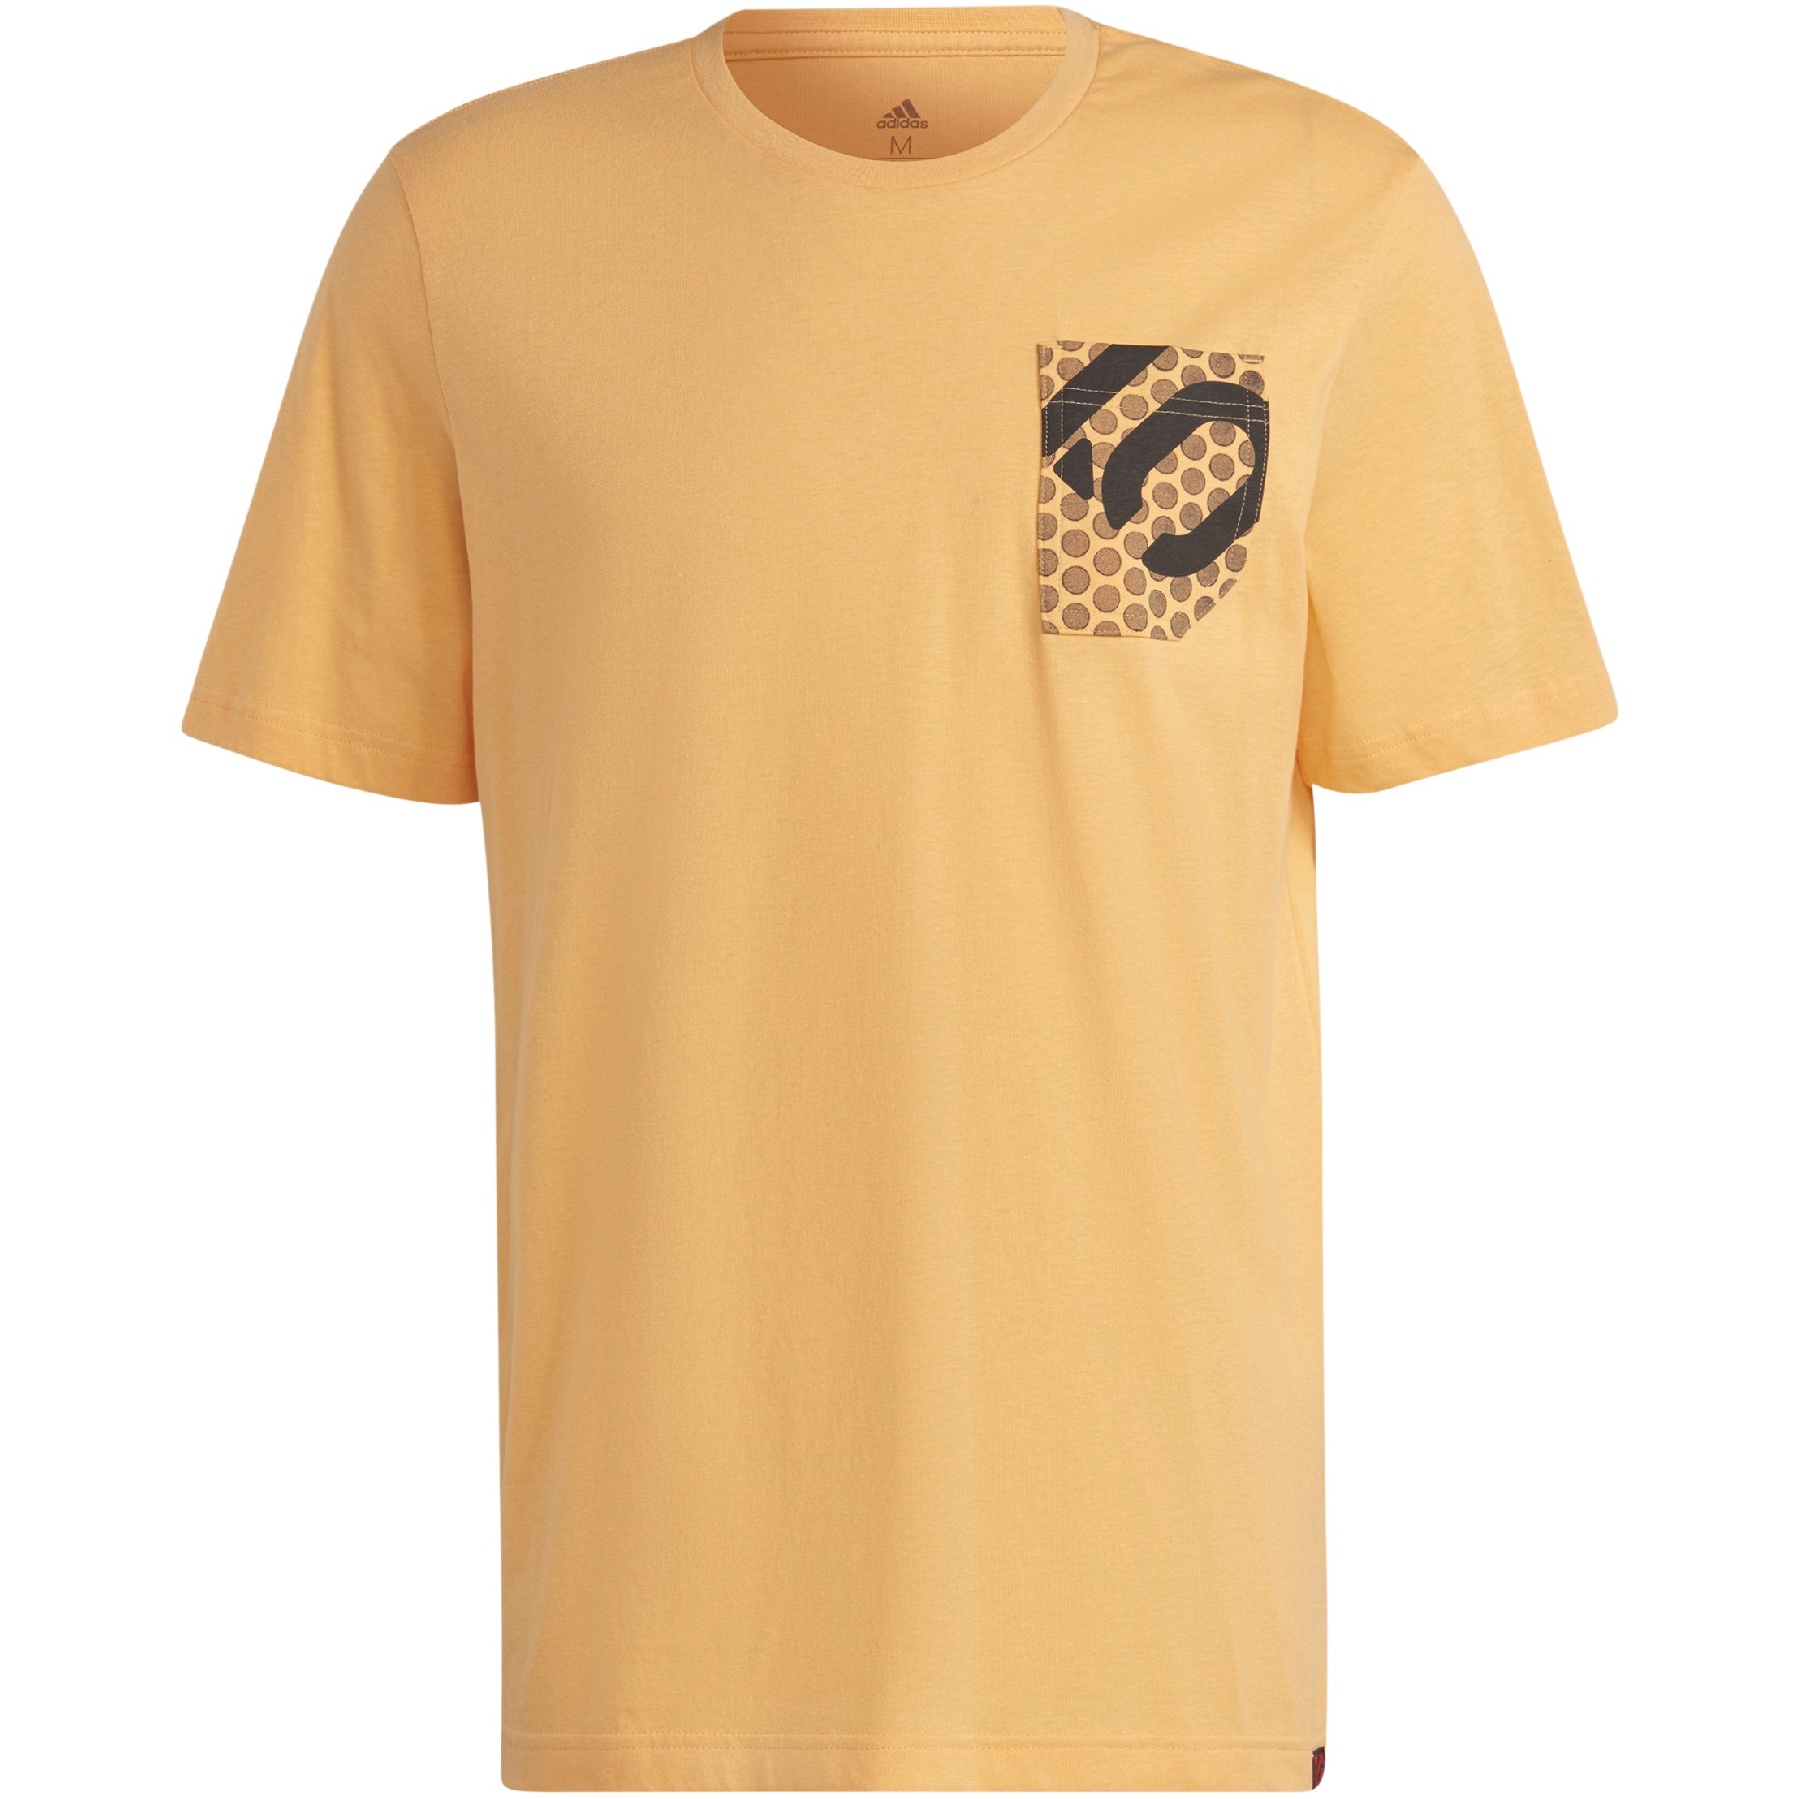 Produktbild von Five Ten Brand Of The Brave T-Shirt - Hazora